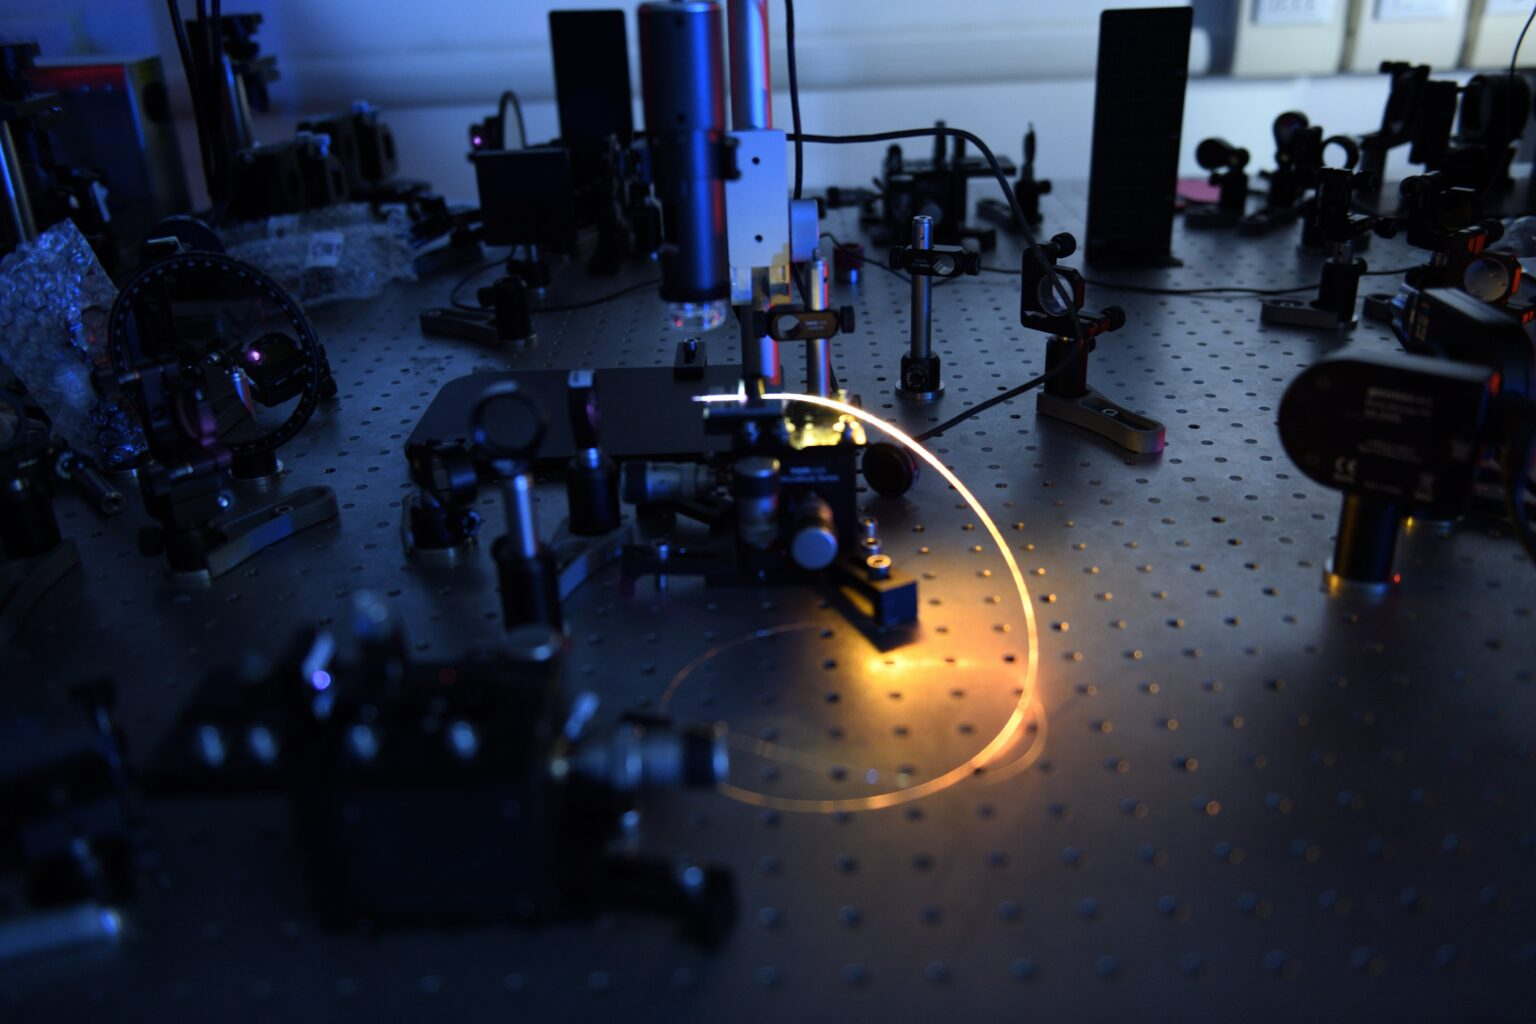 Хятадын анхны аттосекунд лазер төхөөрөмж бүтээгдэж байна